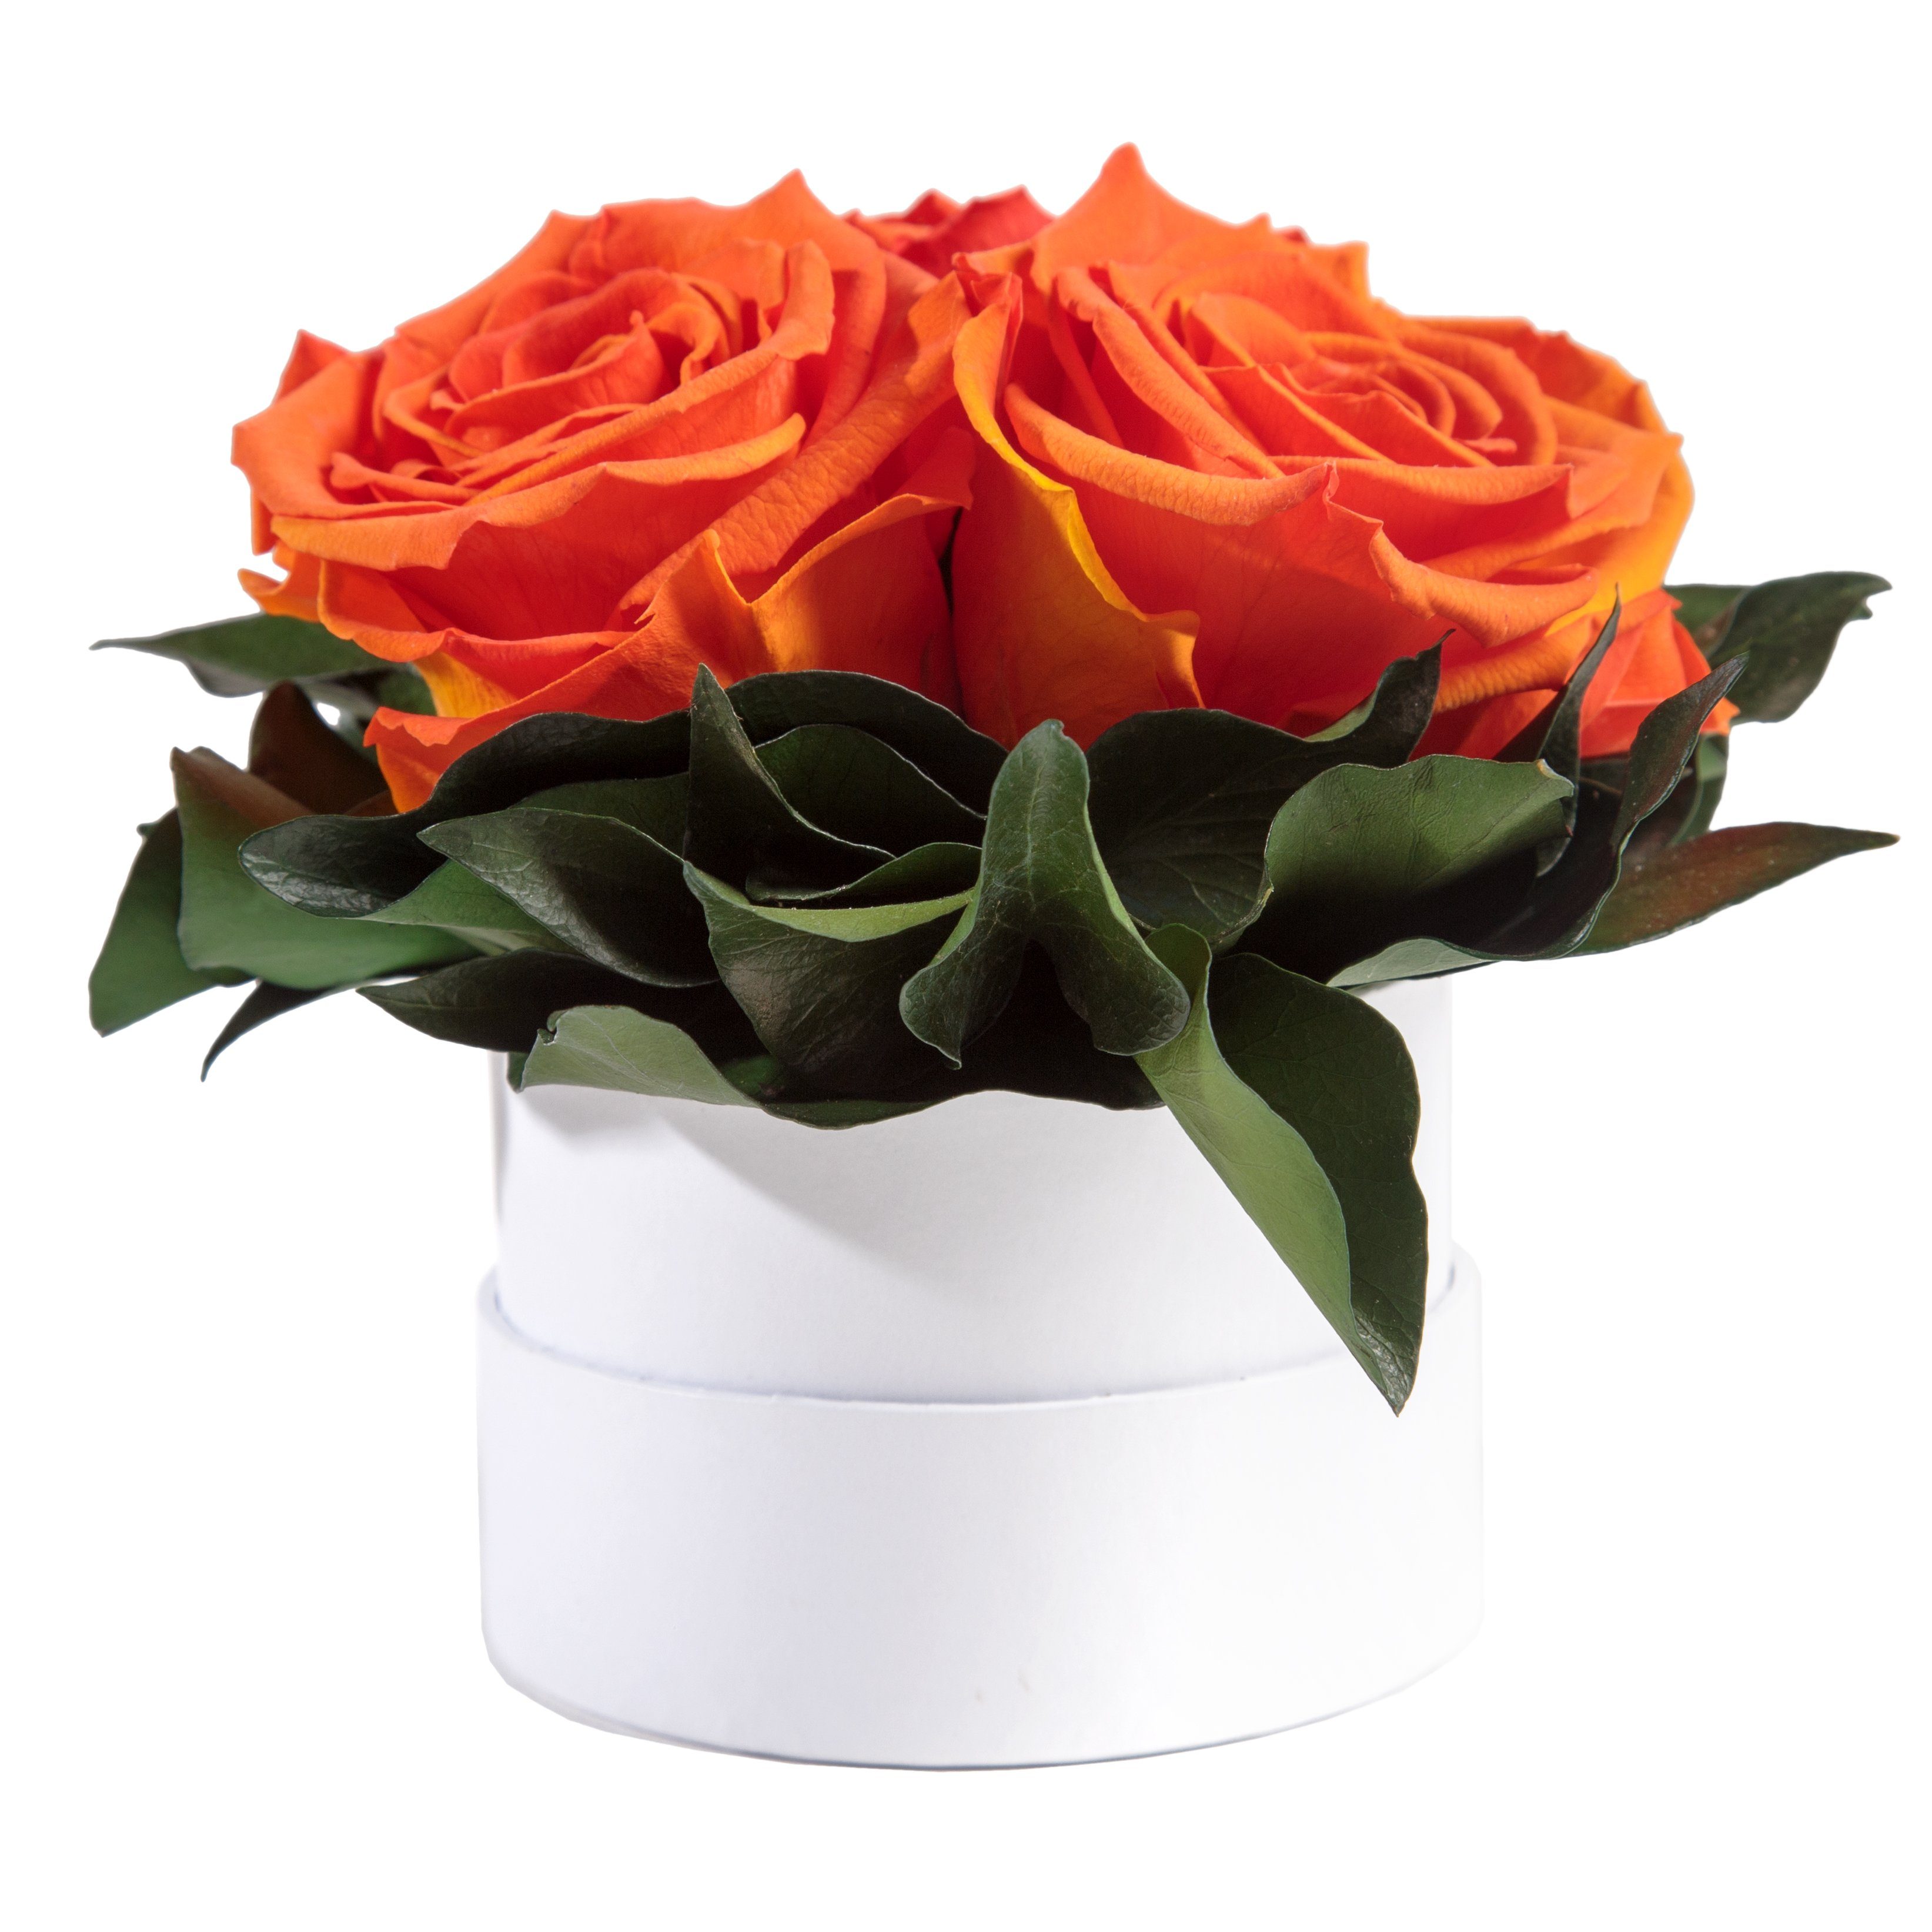 Kunstblume Infinity Rosenbox weiß rund 3 echte Rosen konserviert Rose, ROSEMARIE SCHULZ Heidelberg, Höhe 10 cm, Geschenk für Sie Rosen Orange